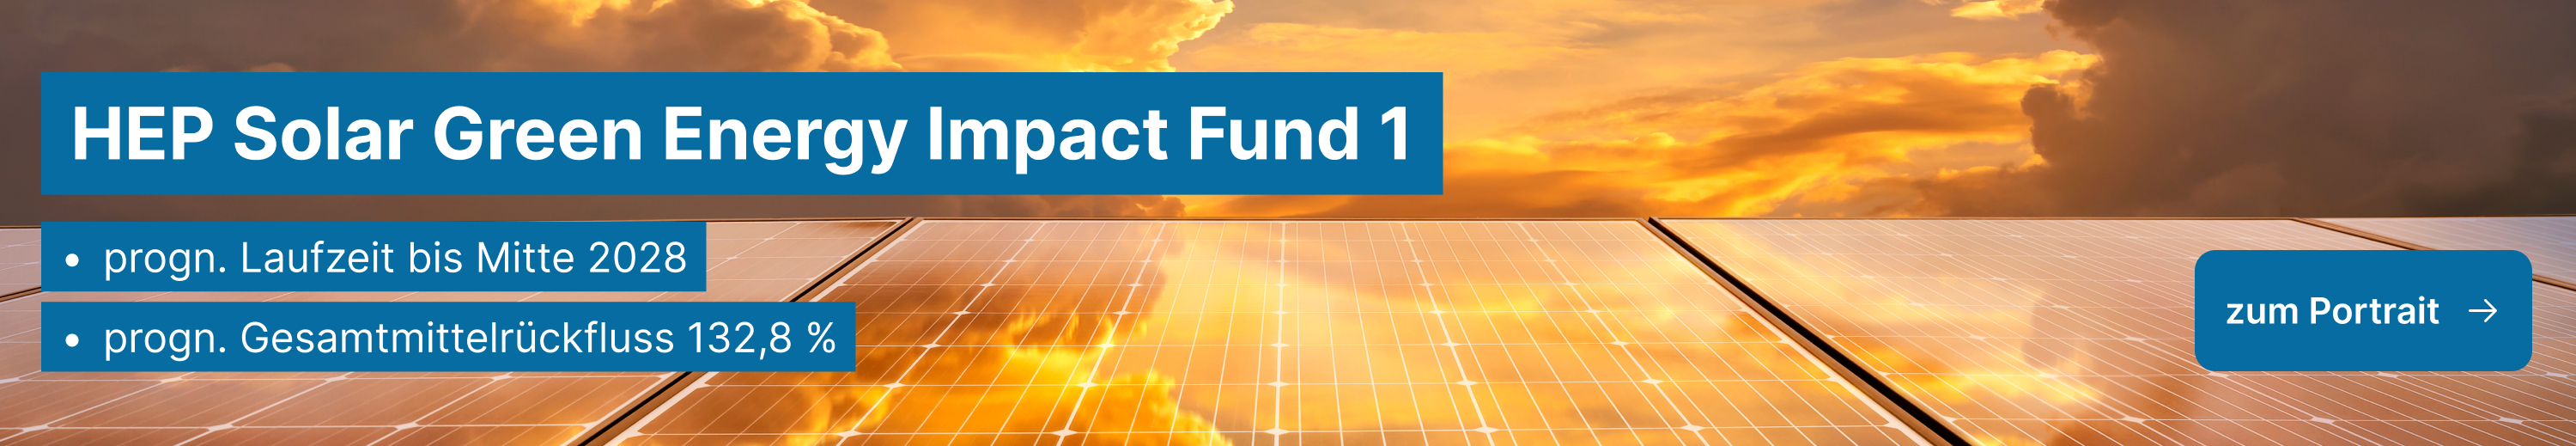 Banner: HEP Solar Green Energy Impact Fund 1, progn. Laufzeit bis 2028, progn. Gesamtmittelrückfluss 132,8 %, Bild: Solarflächen im Abend- oder Morgenrot, im Hintergrund Wolken